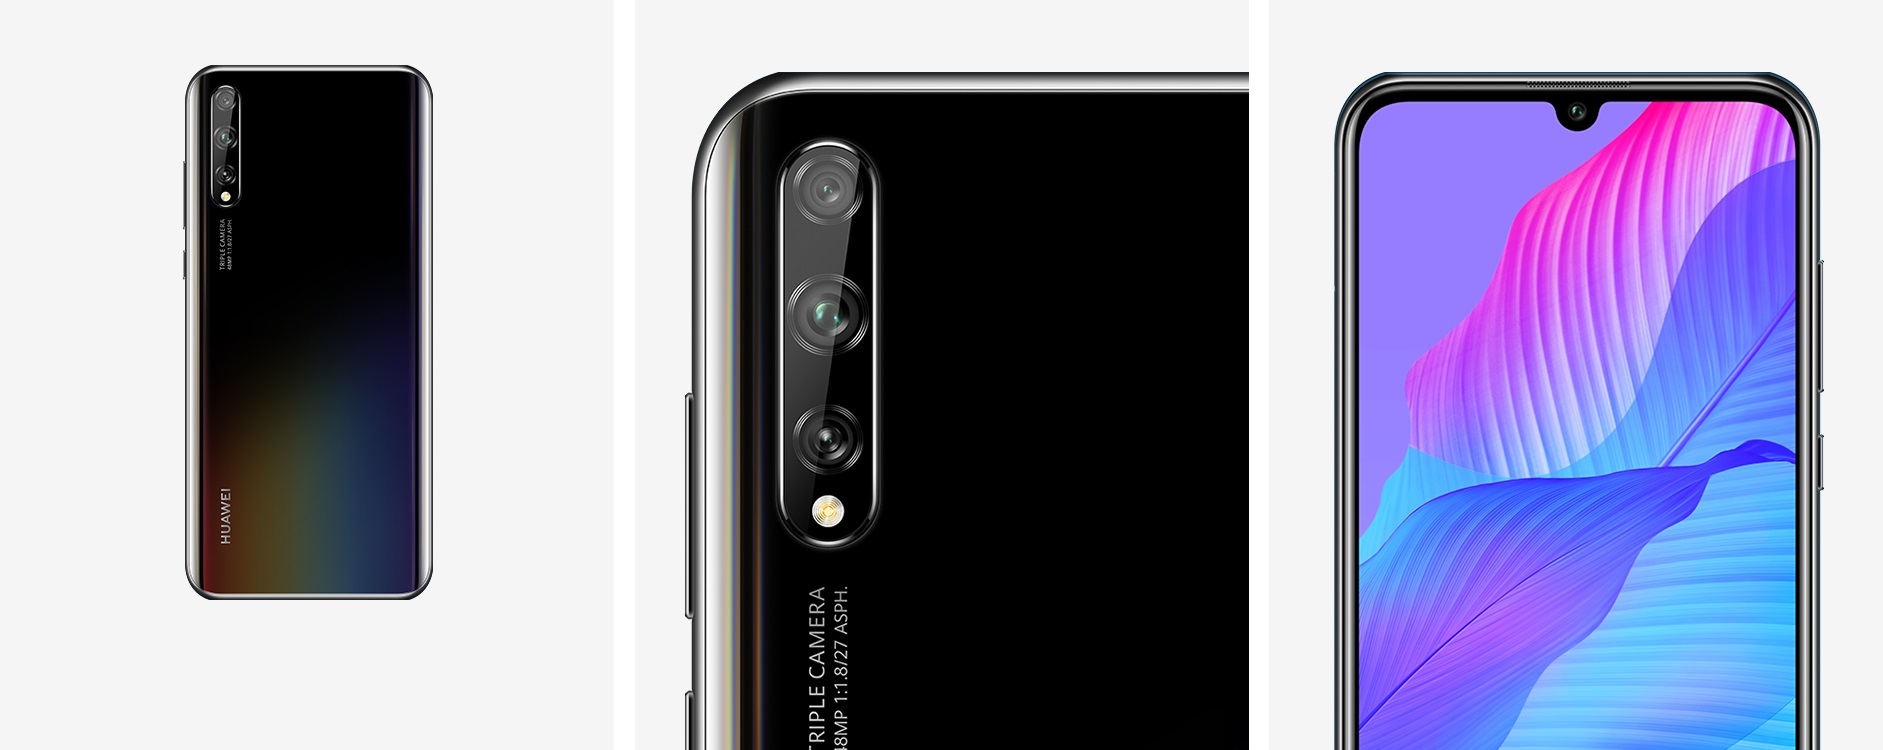 Huawei Y8p smartphone